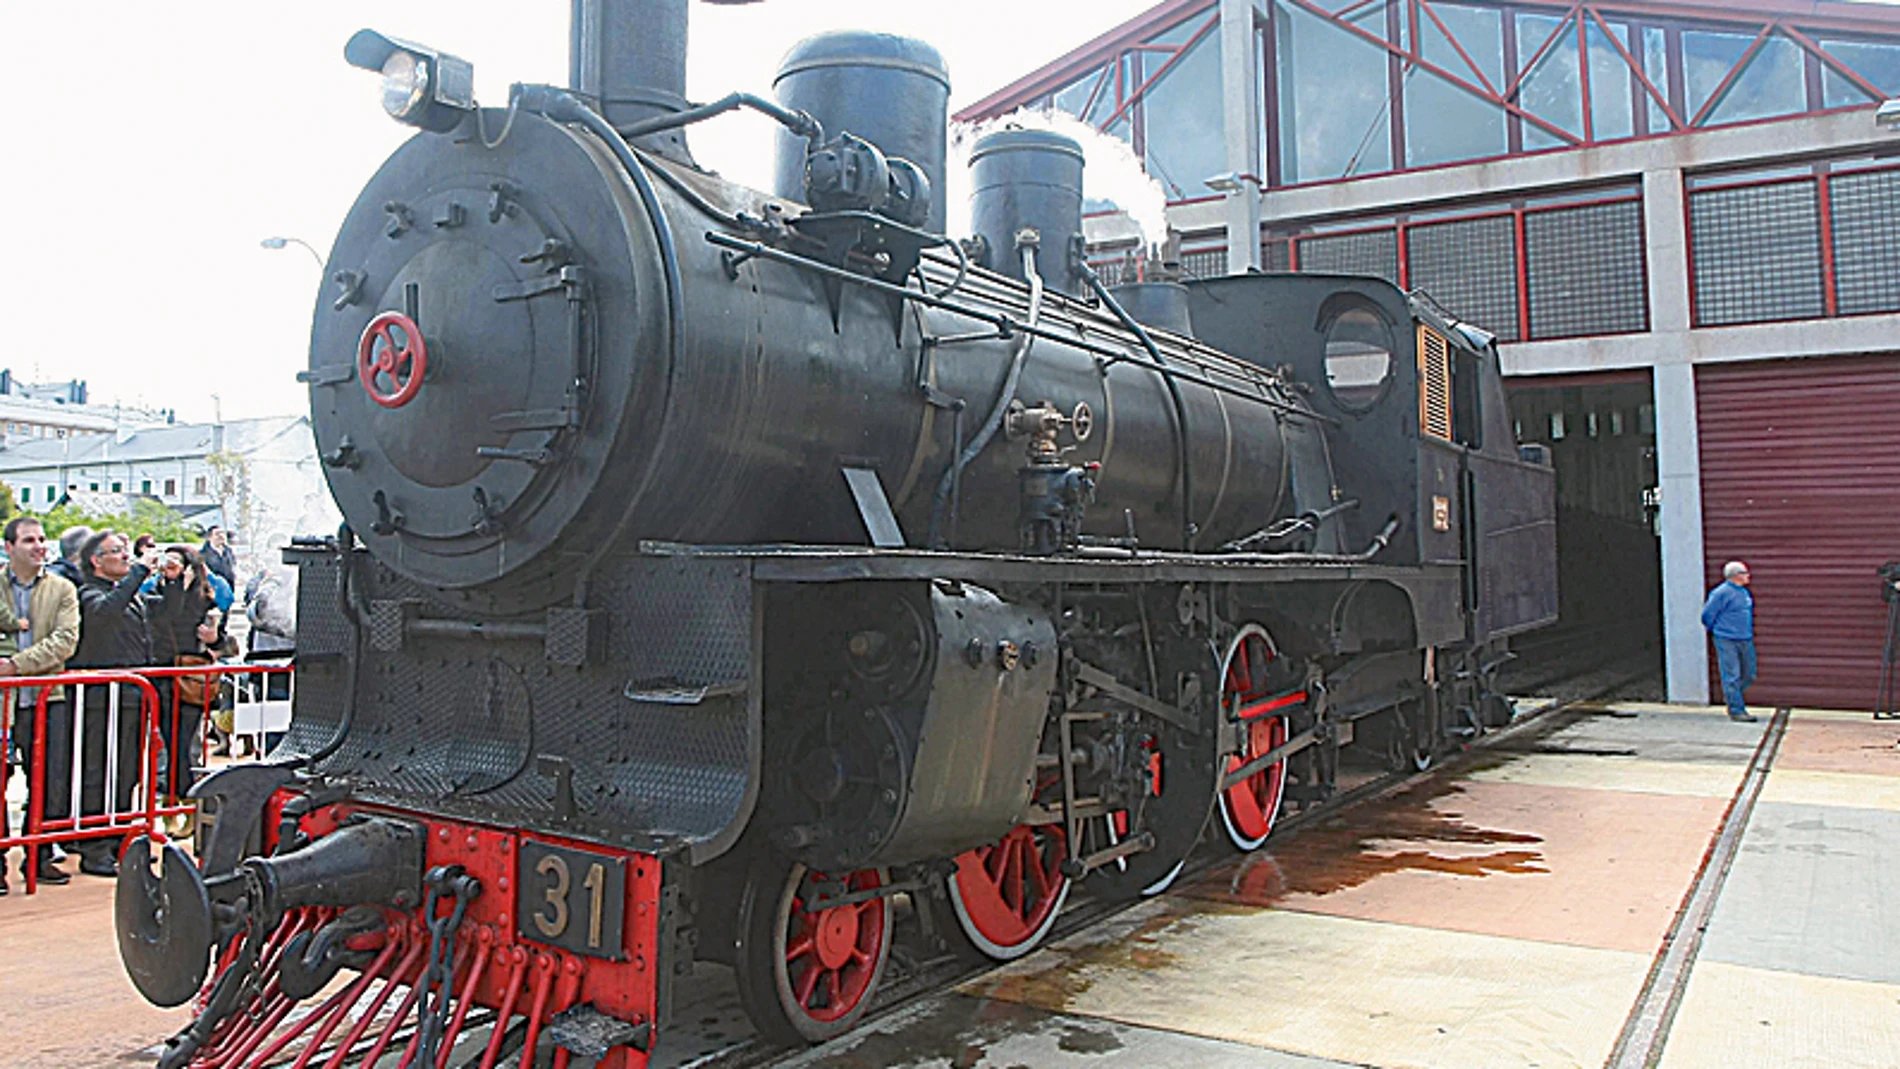 La mítica locomotora número 31 de Ponfeblino arrancó por última vez hace dos años ante una gran expectación